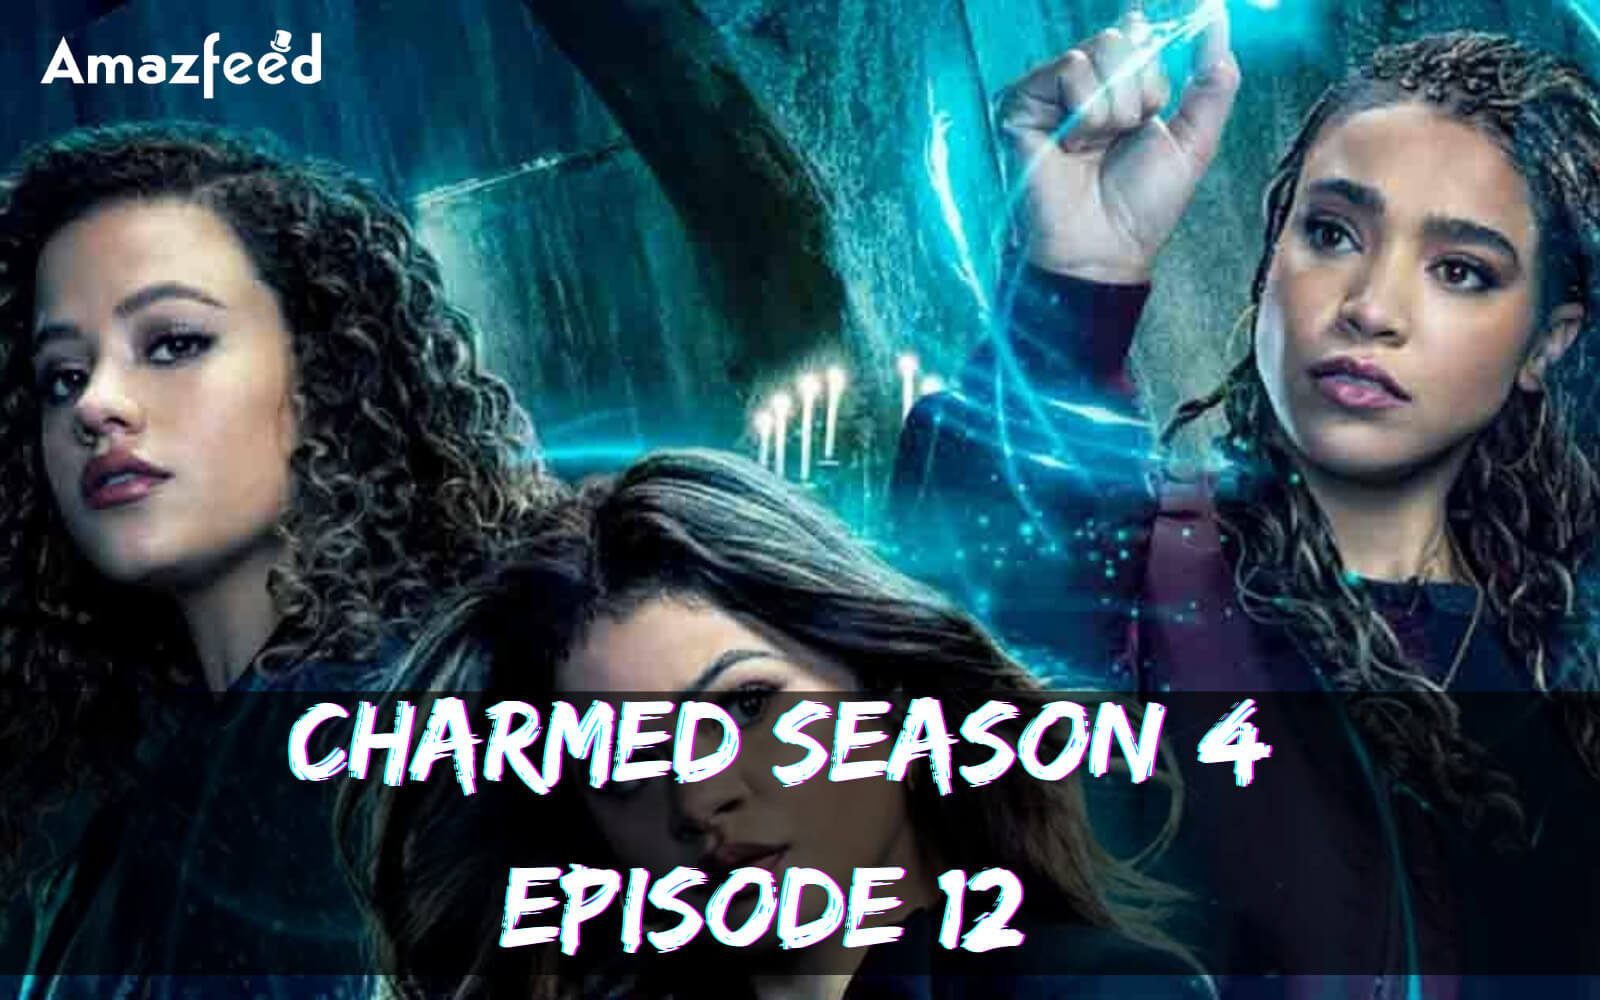 Charmed Season 4 Episode 12 release date